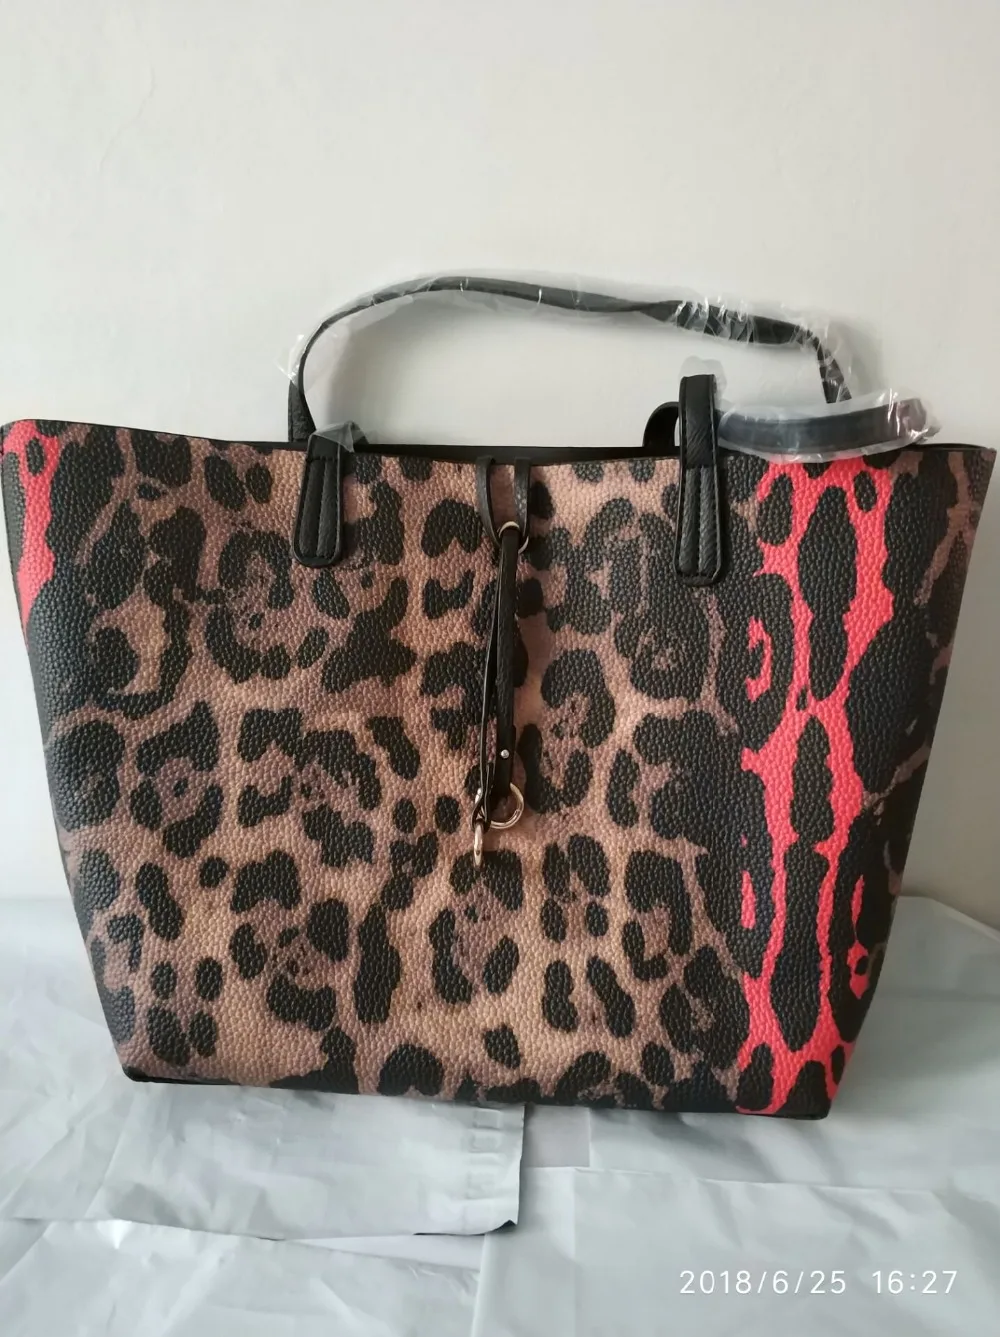 Leopard Prints Handbags Large Causal Tote для женщин наплечные сумки роскошный дизайнер моды кожаный хозяйственный сумка